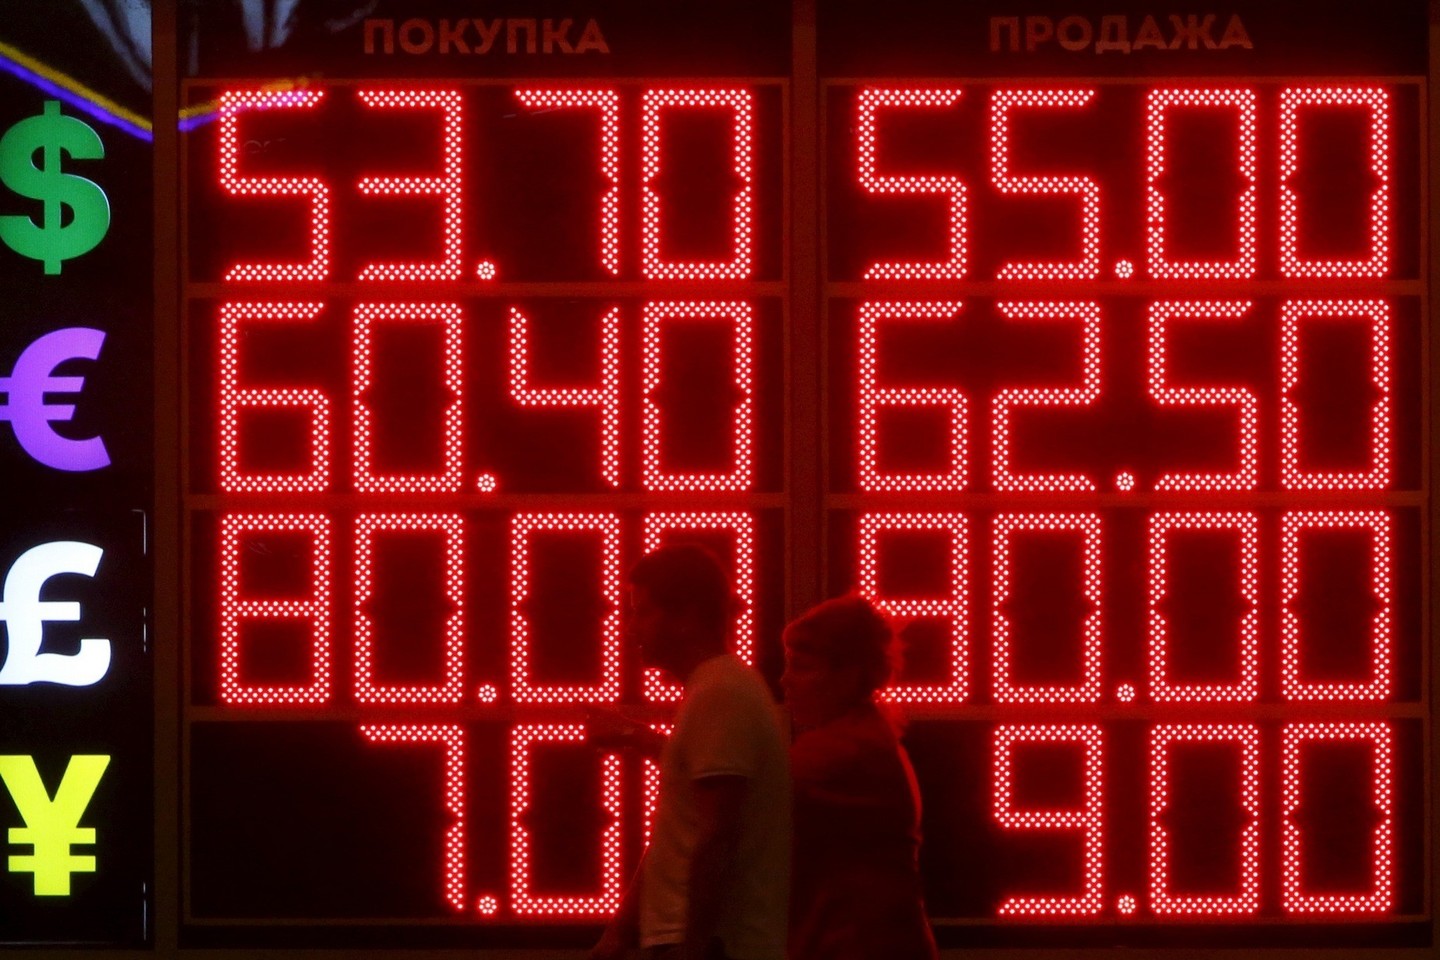 Dabartinė krizė Rusijoje užsitęs ilgiau, prognozuoja ekonomistai.<br>Reuters/Scanpix nuotr.